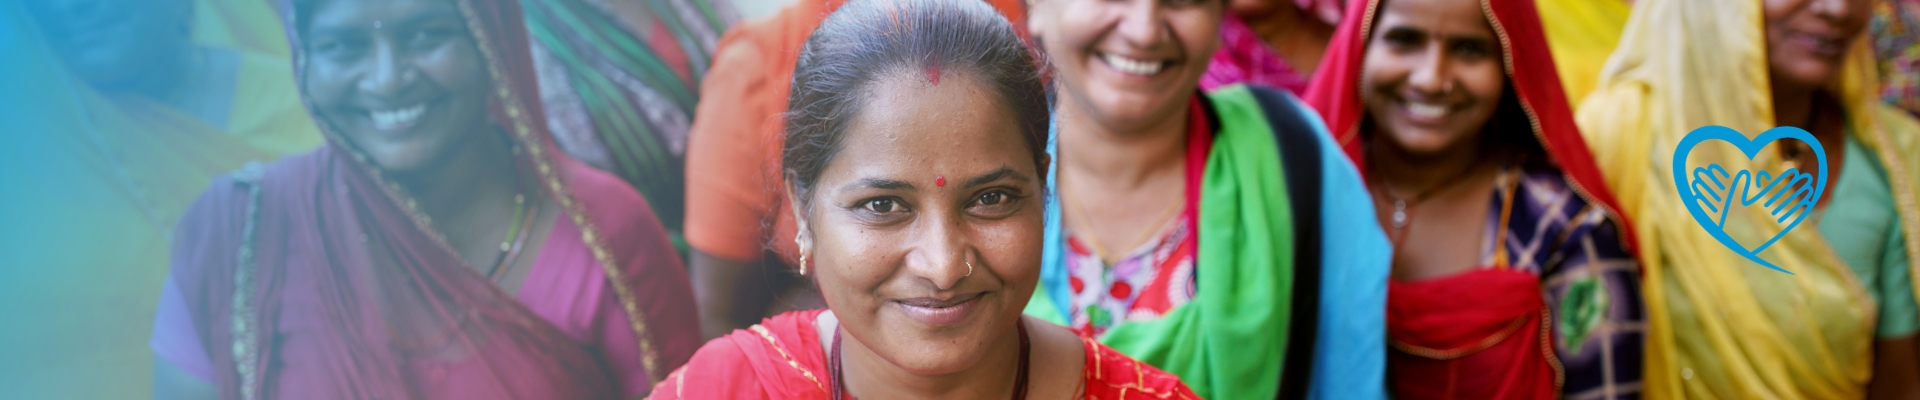 Indische Frauen schauen in die Kamera mit einem Lächeln im Gesicht - UN Women Friend werden und mit einer regelmäßigen Spende gemeinsam Frauen und Mädchen nachhaltig stärken.